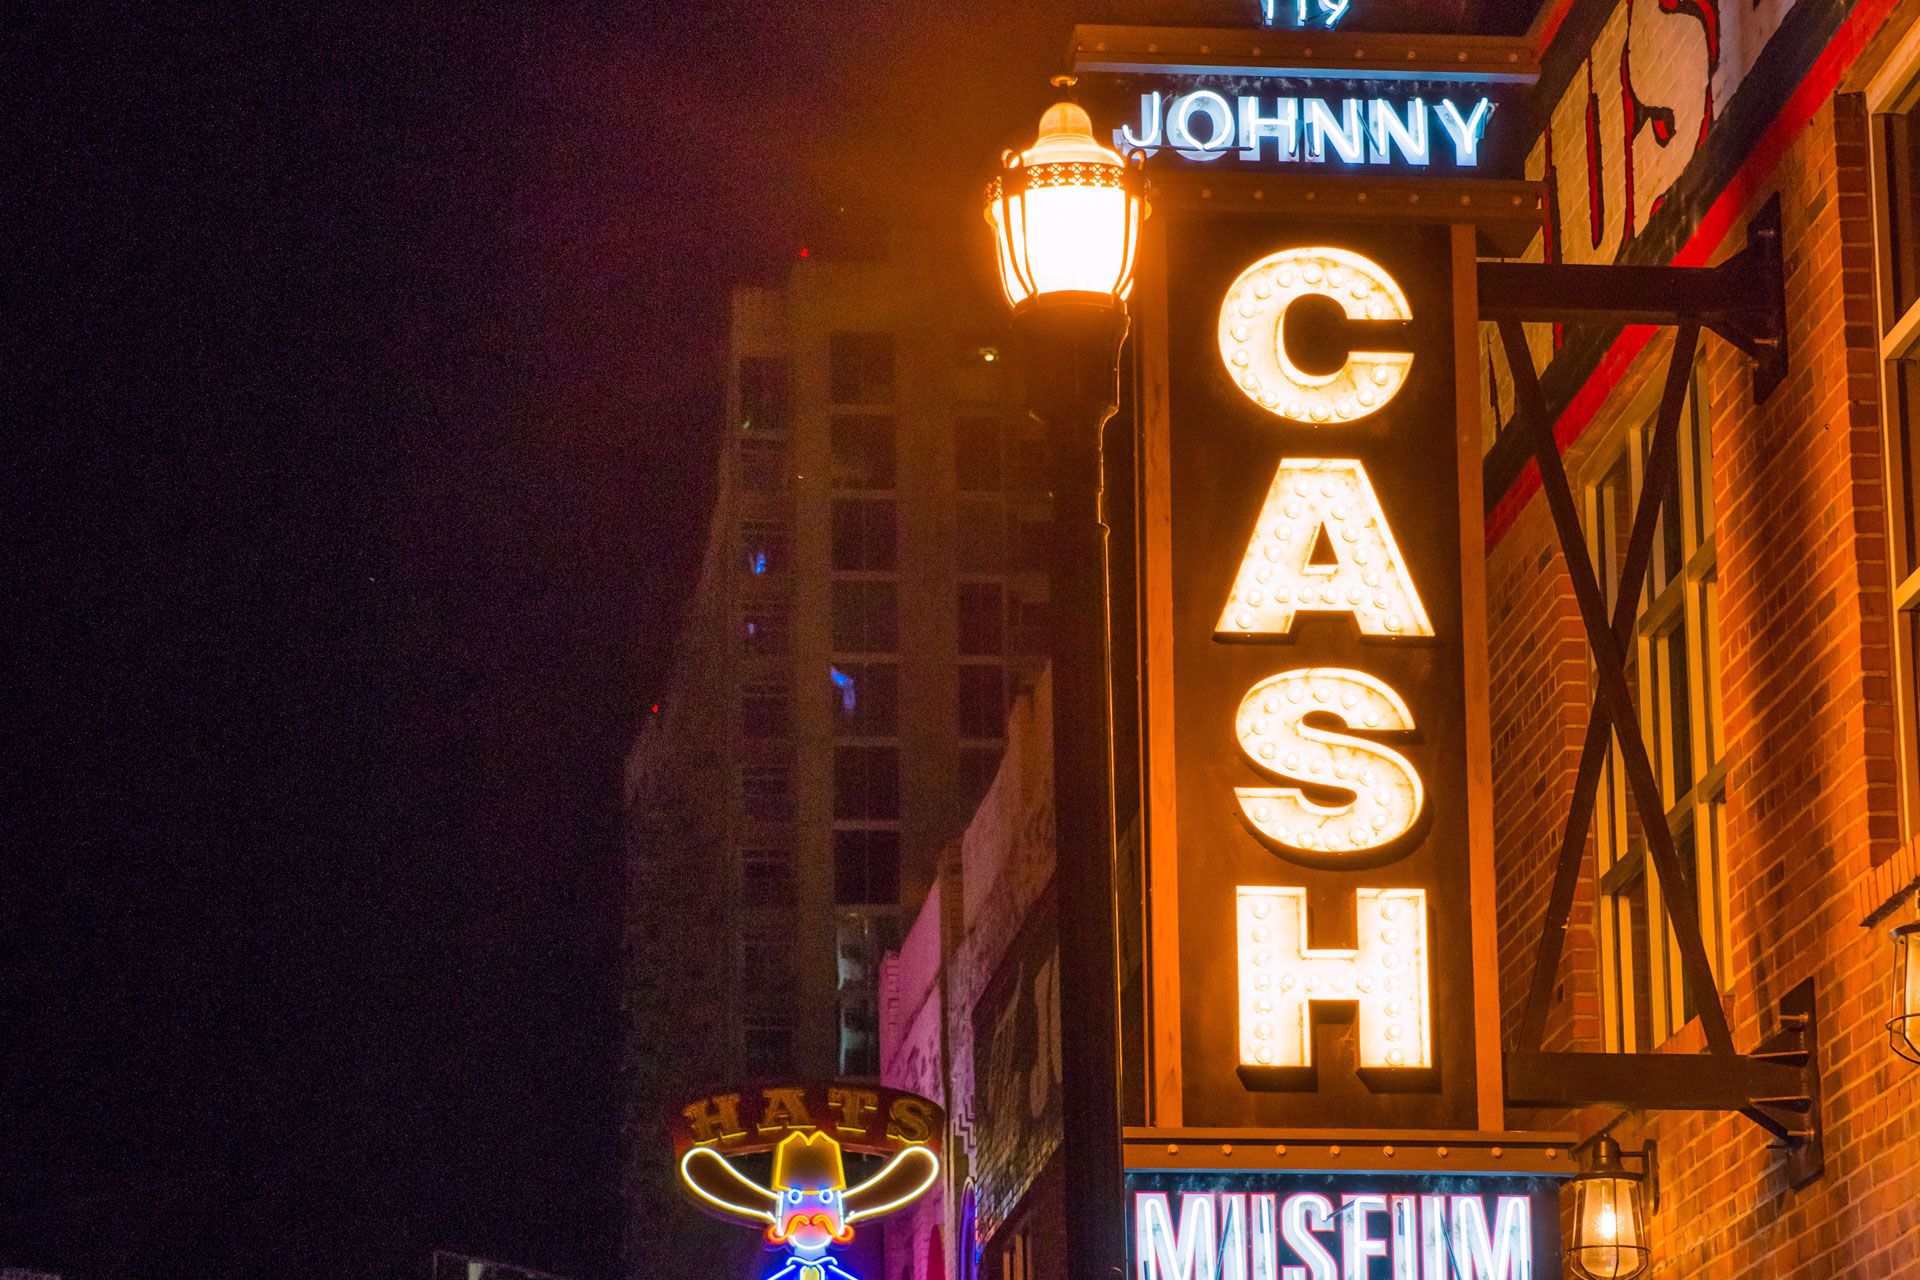 See Nashville's notable landmarks illuminated